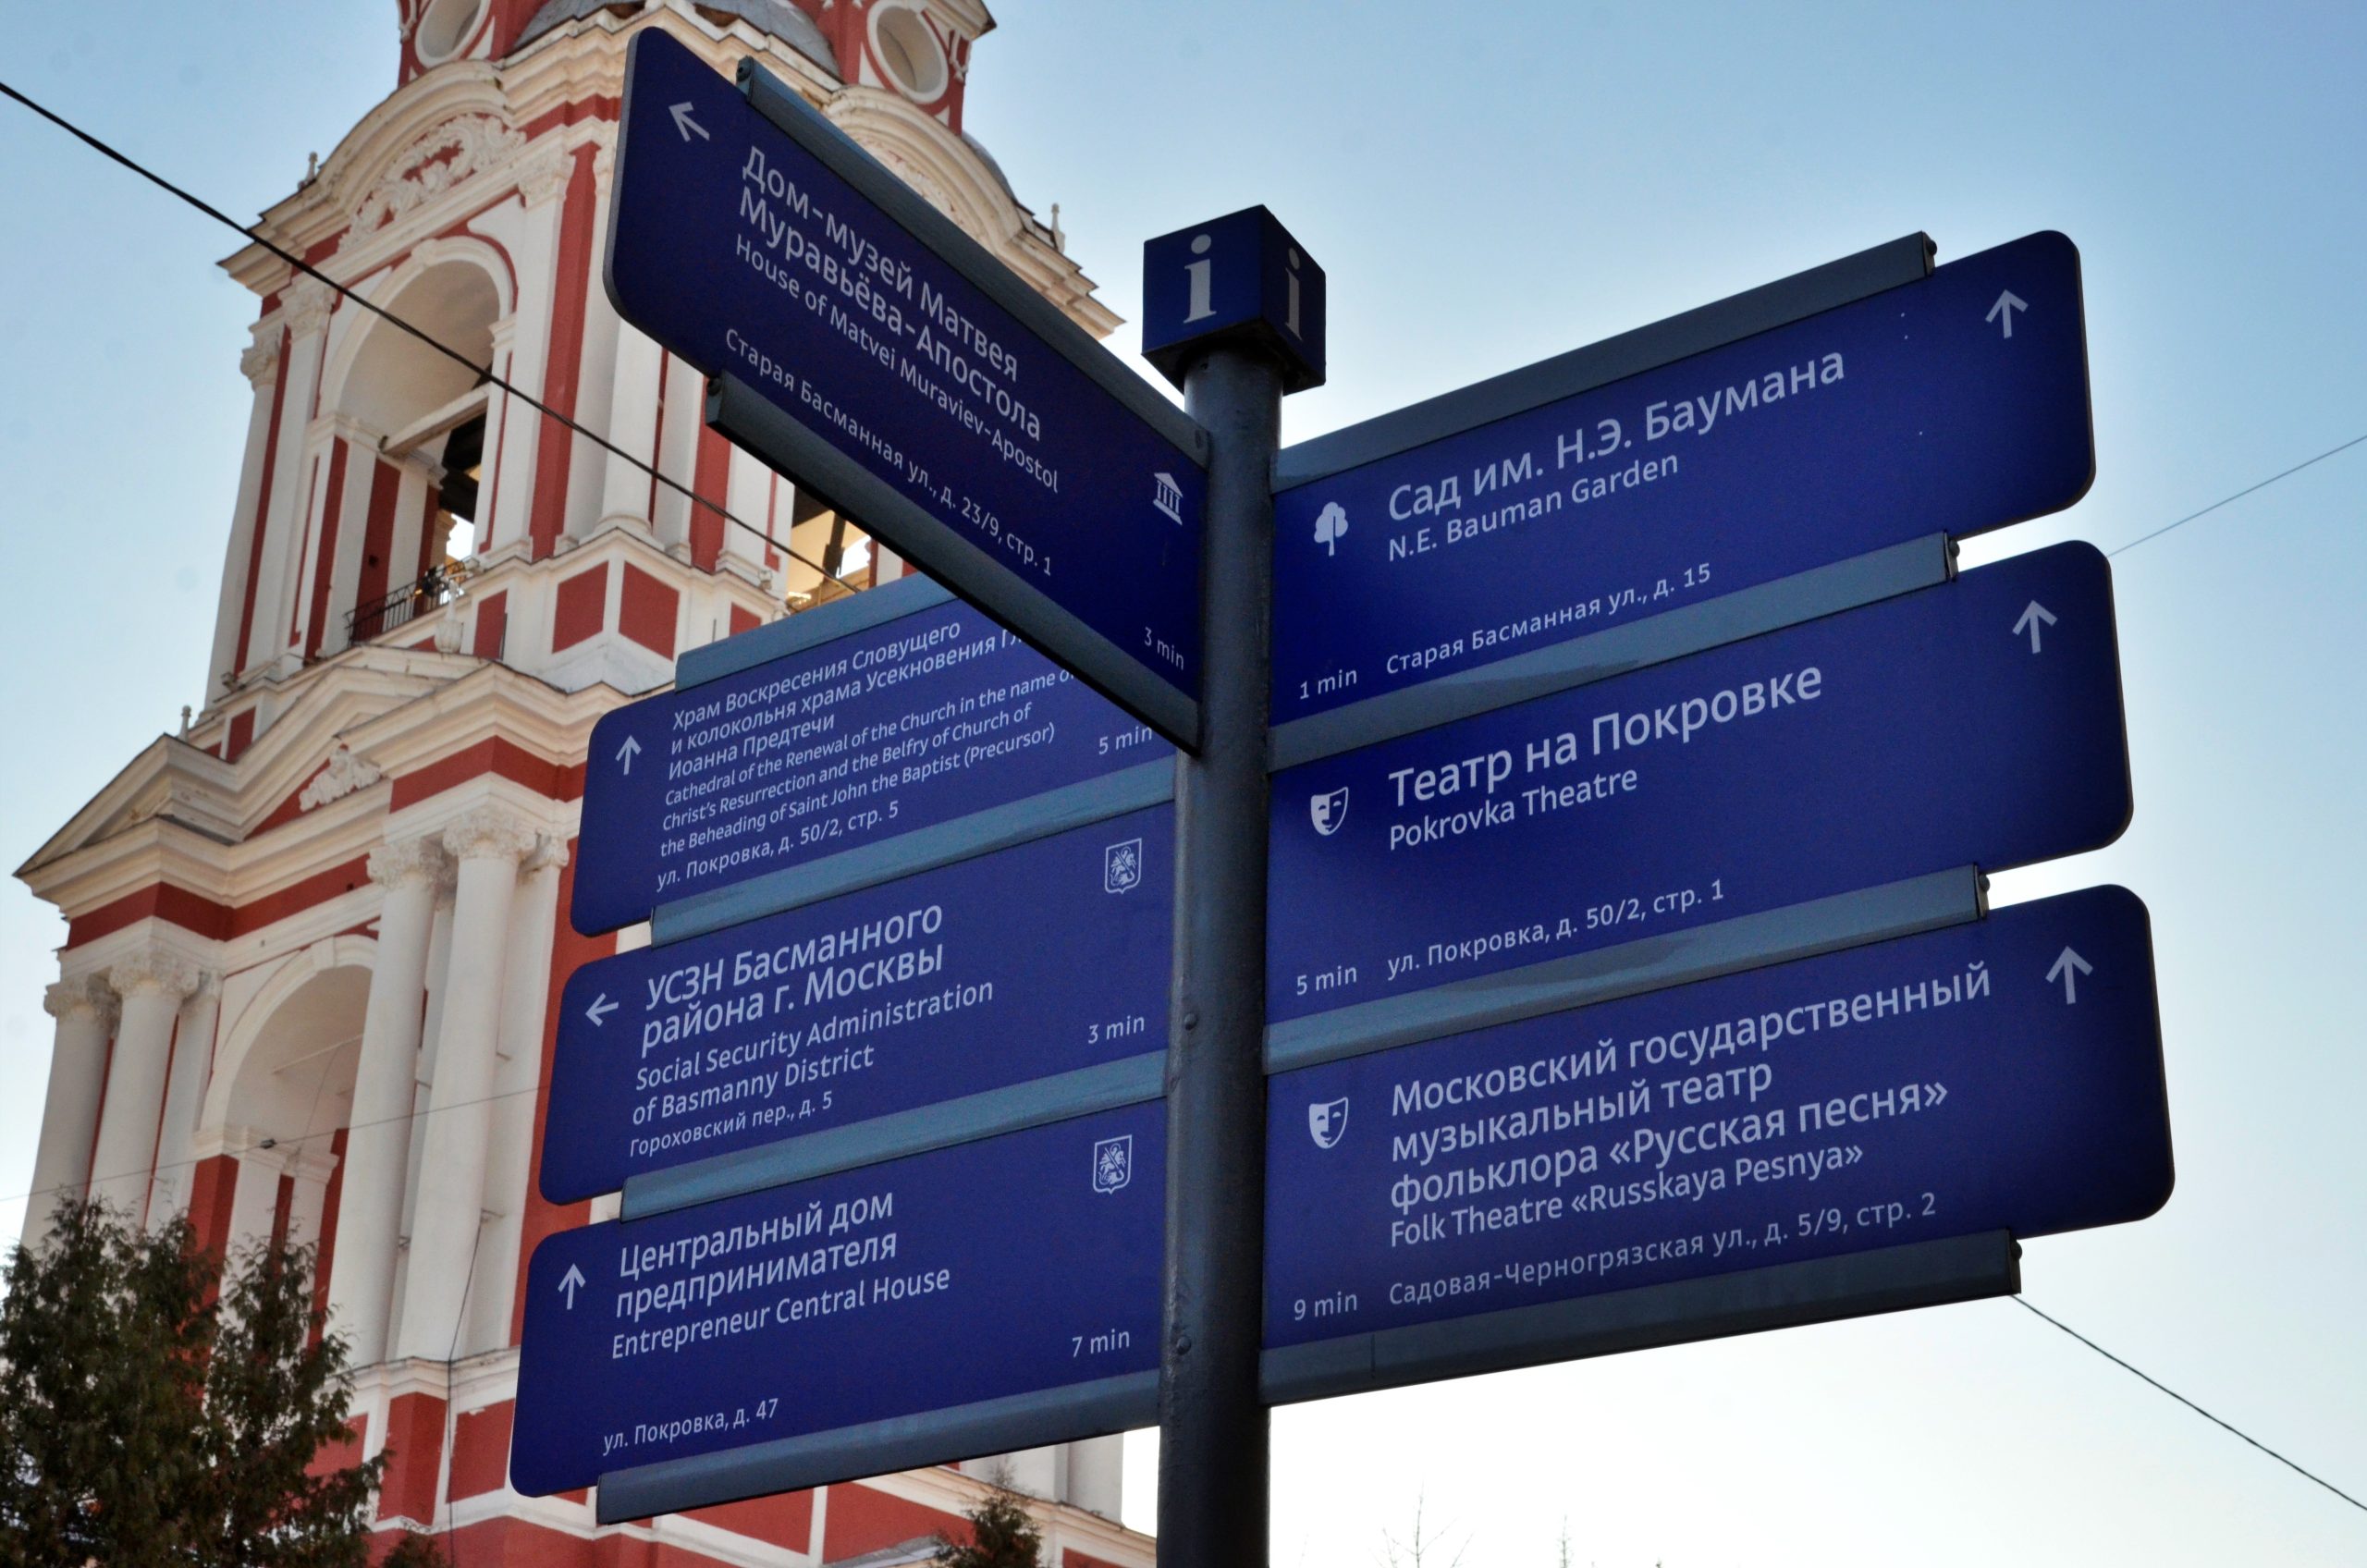 Всего планируется установить 29 городских указателей и 106 информационных полей. Фото: Анна Быкова, «Вечерняя Москва»